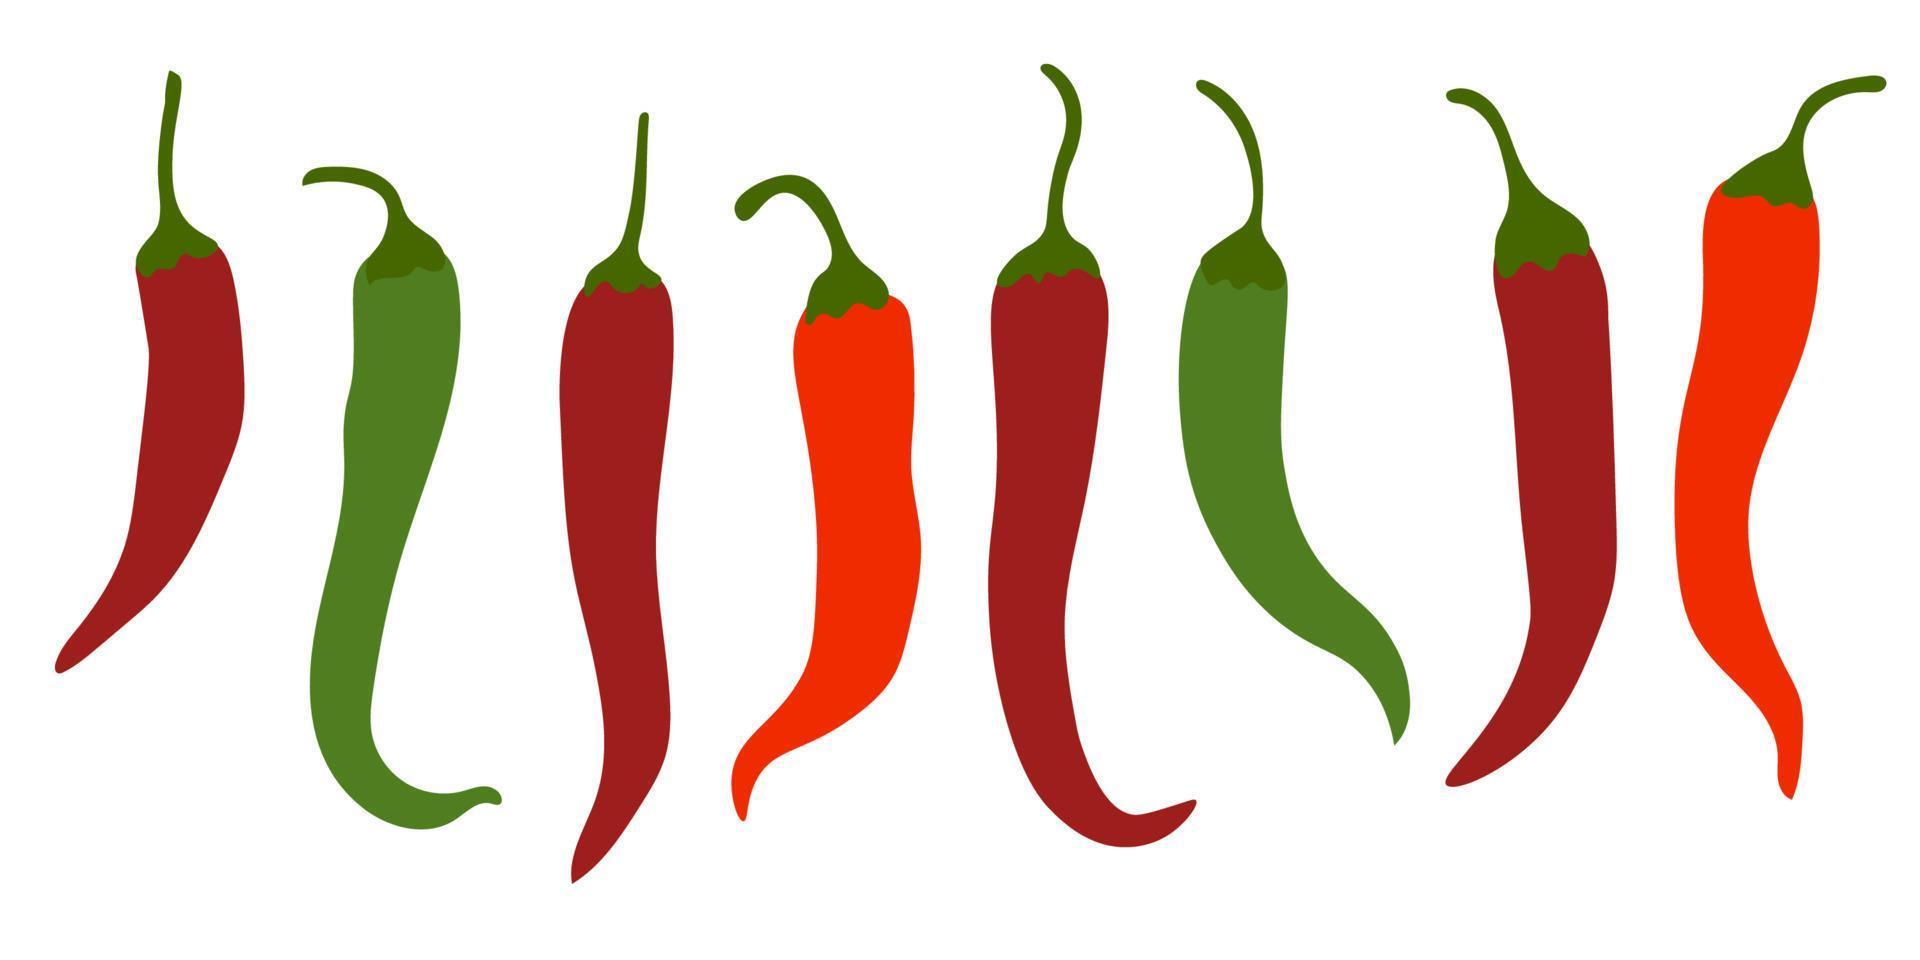 pittige chilipepers, rode, groene plat pictogrammen, groenten voor warme gerechten geïsoleerd op een witte achtergrond. vector